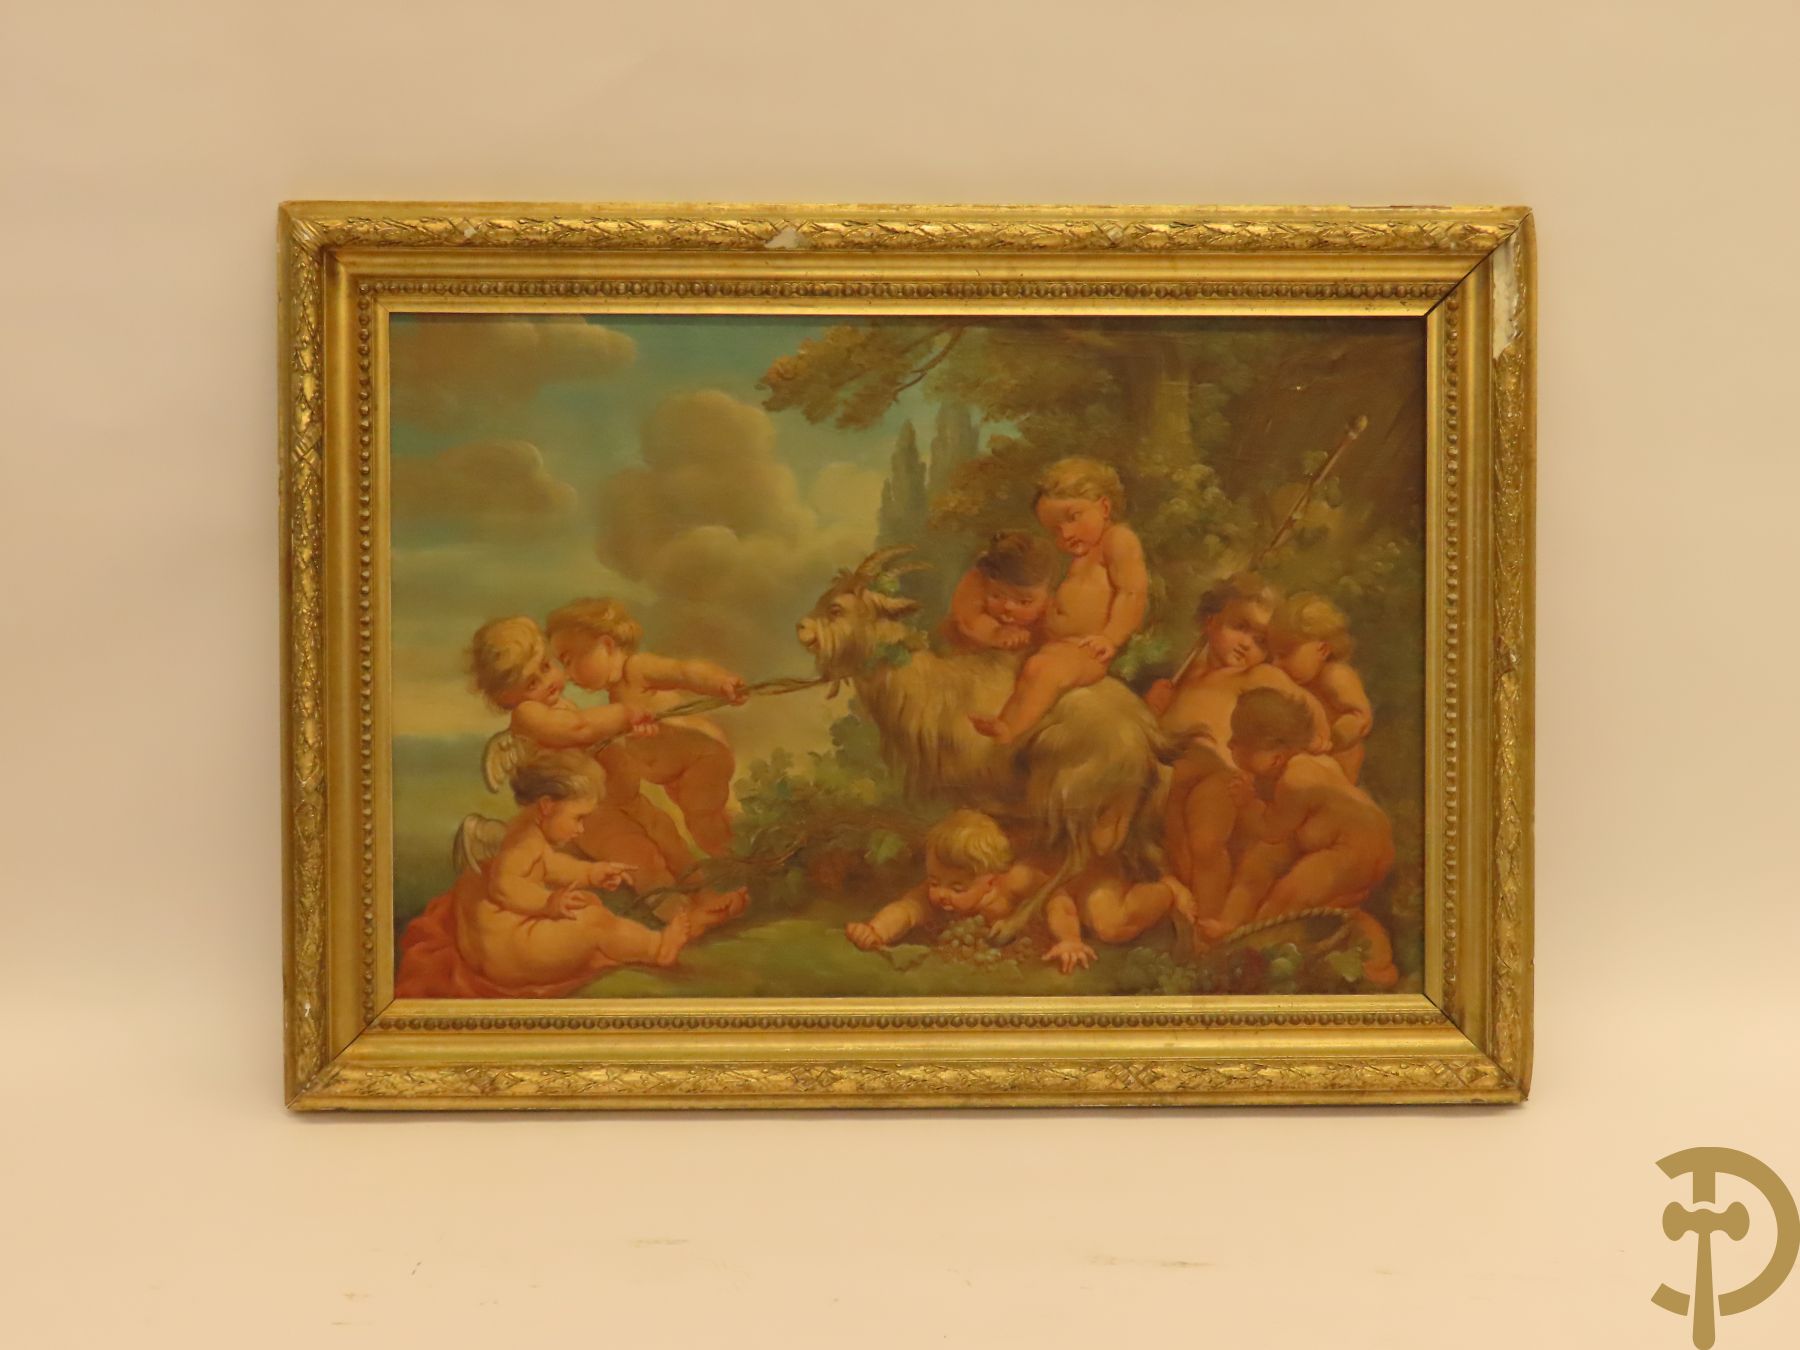 Ongetekend 'Romantische scène met cupido's en bok in loofrijke omgeving' olie op doek in vergulde Louis XVI lijst